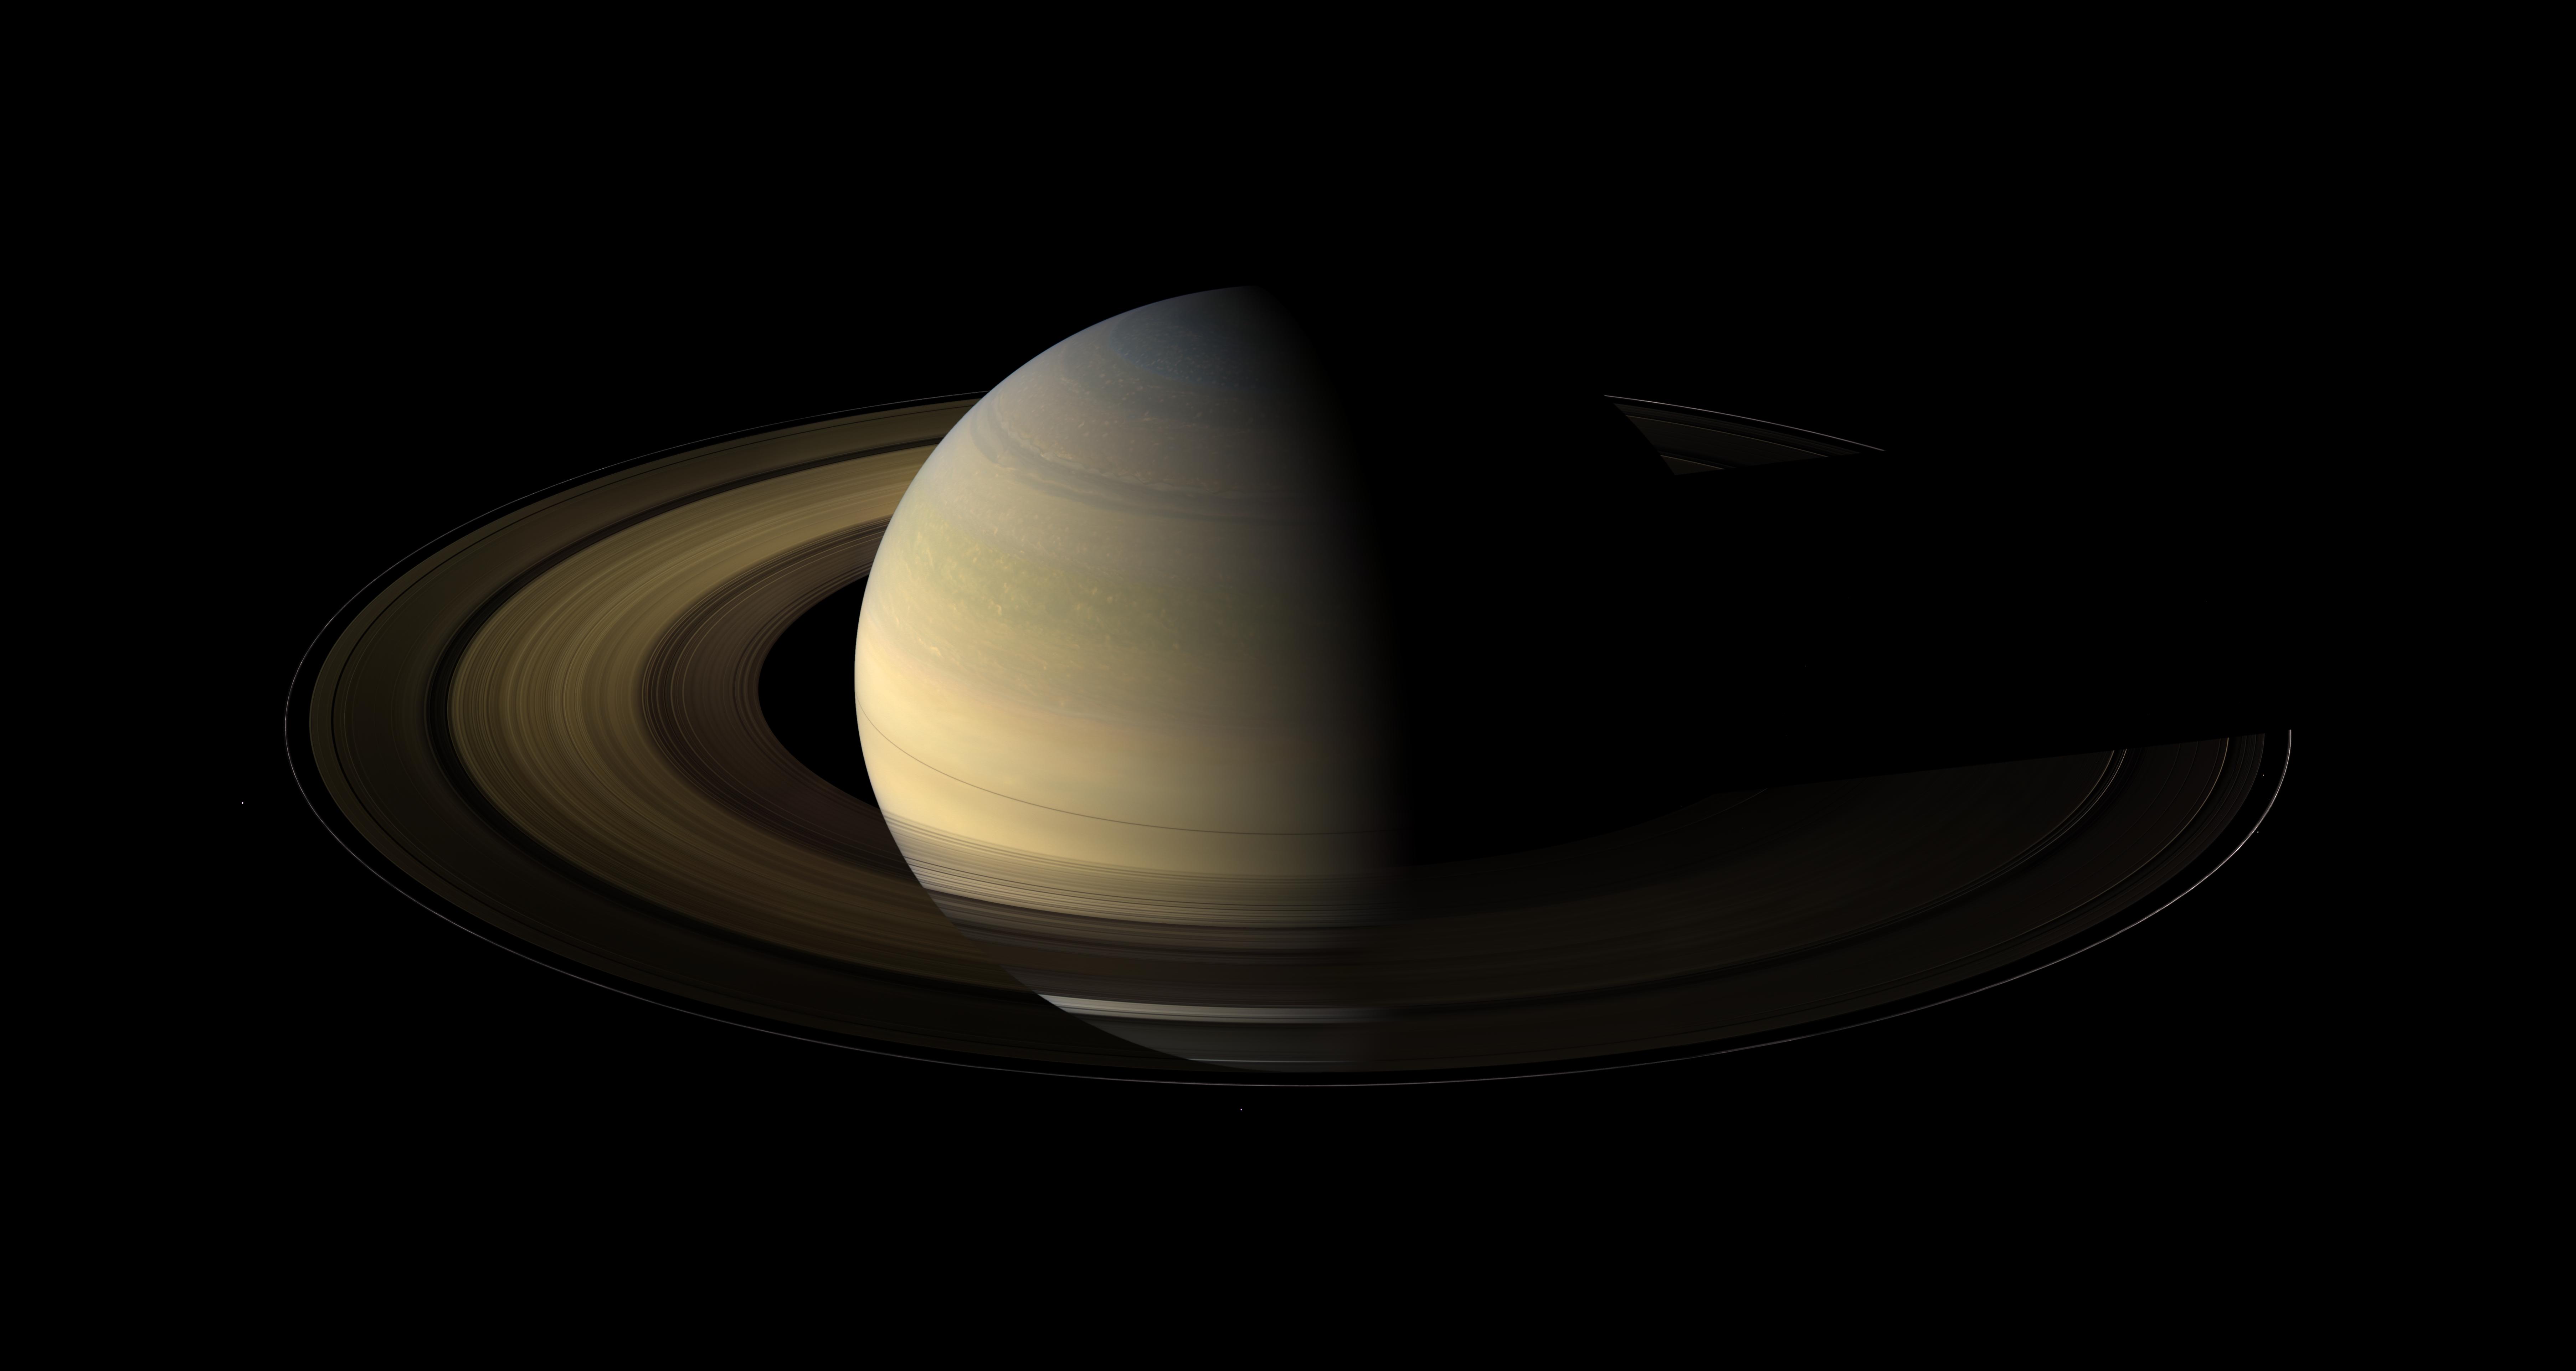 APOD 2014 September 21 Saturn at Equinox